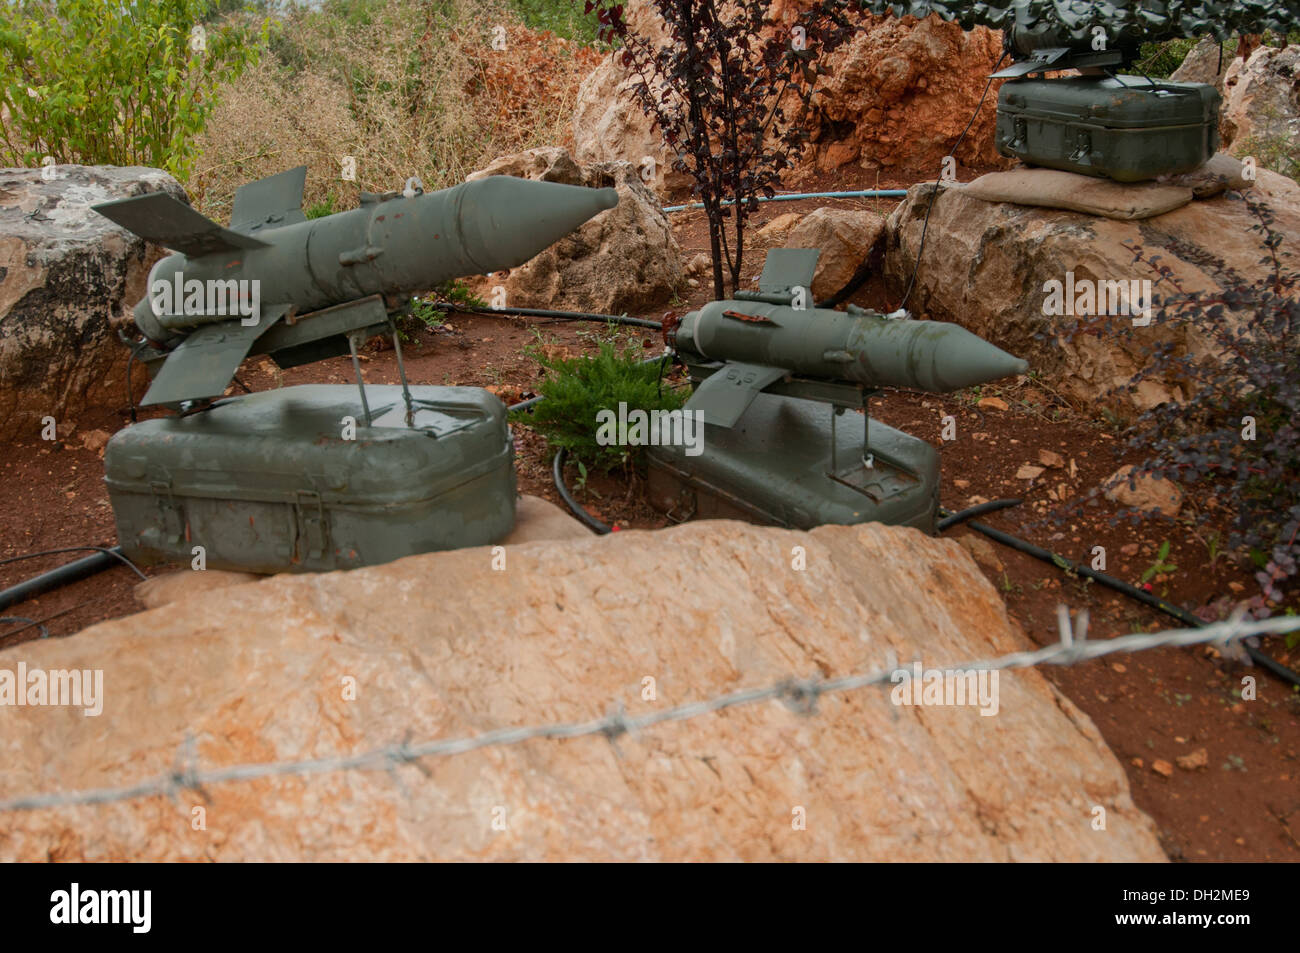 Serbatoio anti missili guidati Malyutka sistema, sviluppato in Unione Sovietica, Mleeta, Museo di Hezbollah, Sud Libano Foto Stock